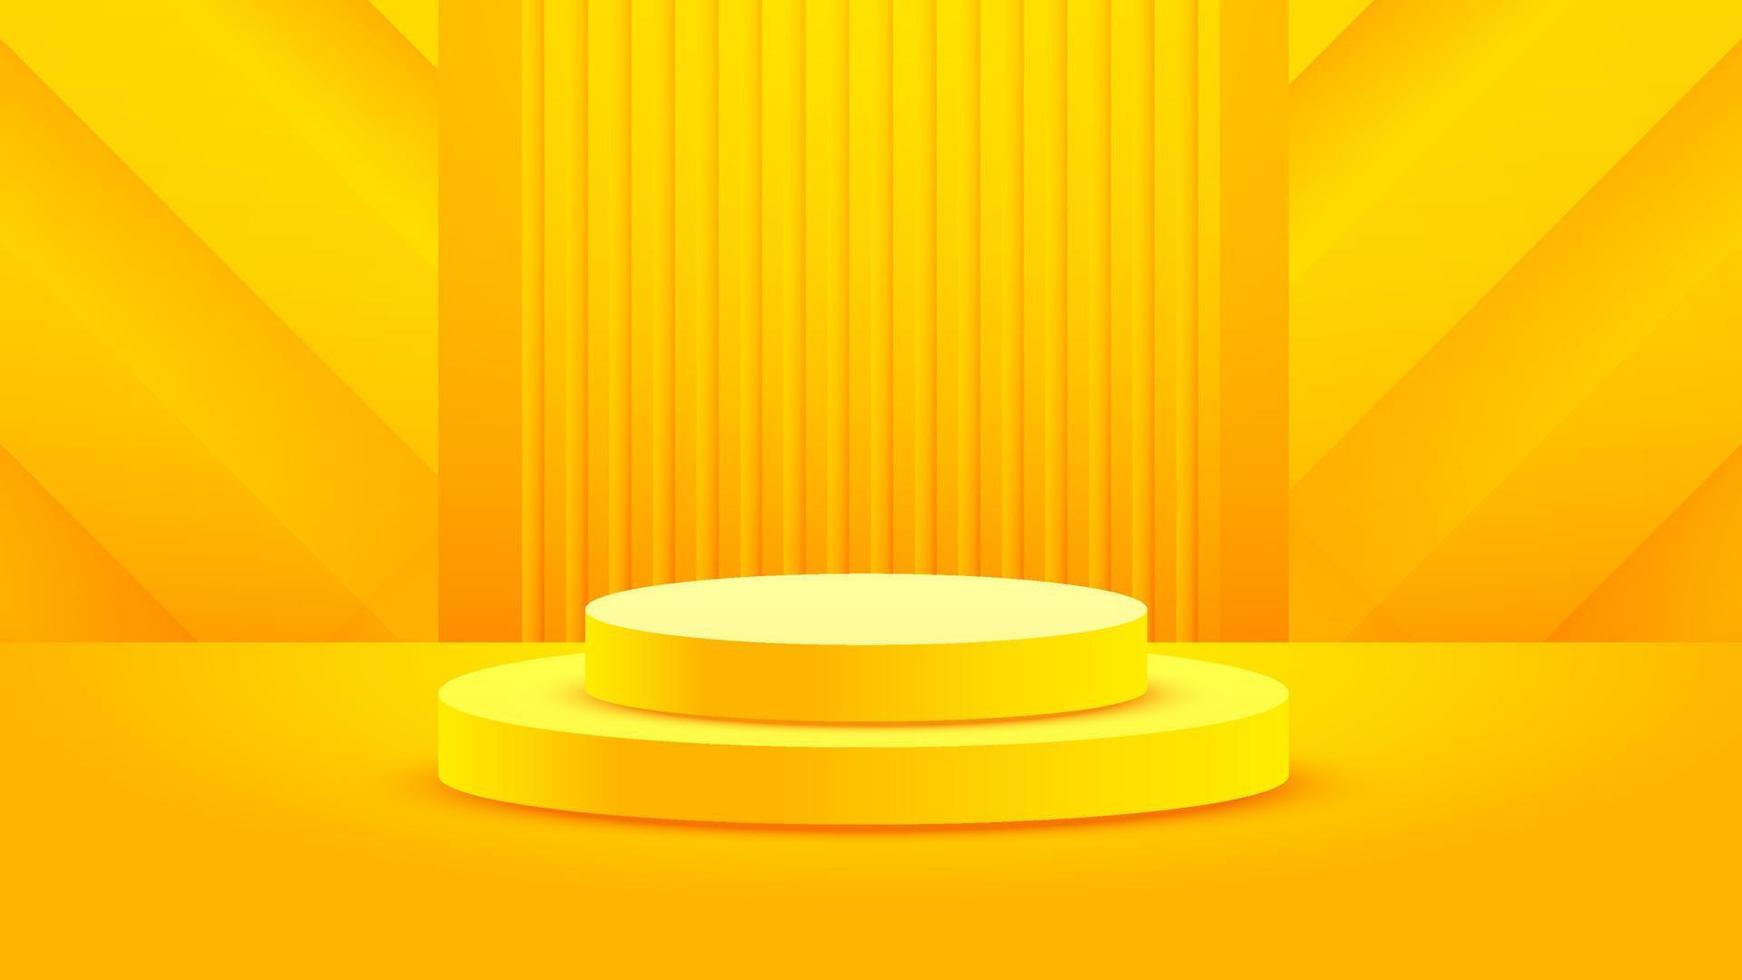 minimalismo de fundo em relevo amarelo realista com vetor de pódio em branco 3d para colocar seu produto, ilustração de banner abstrato